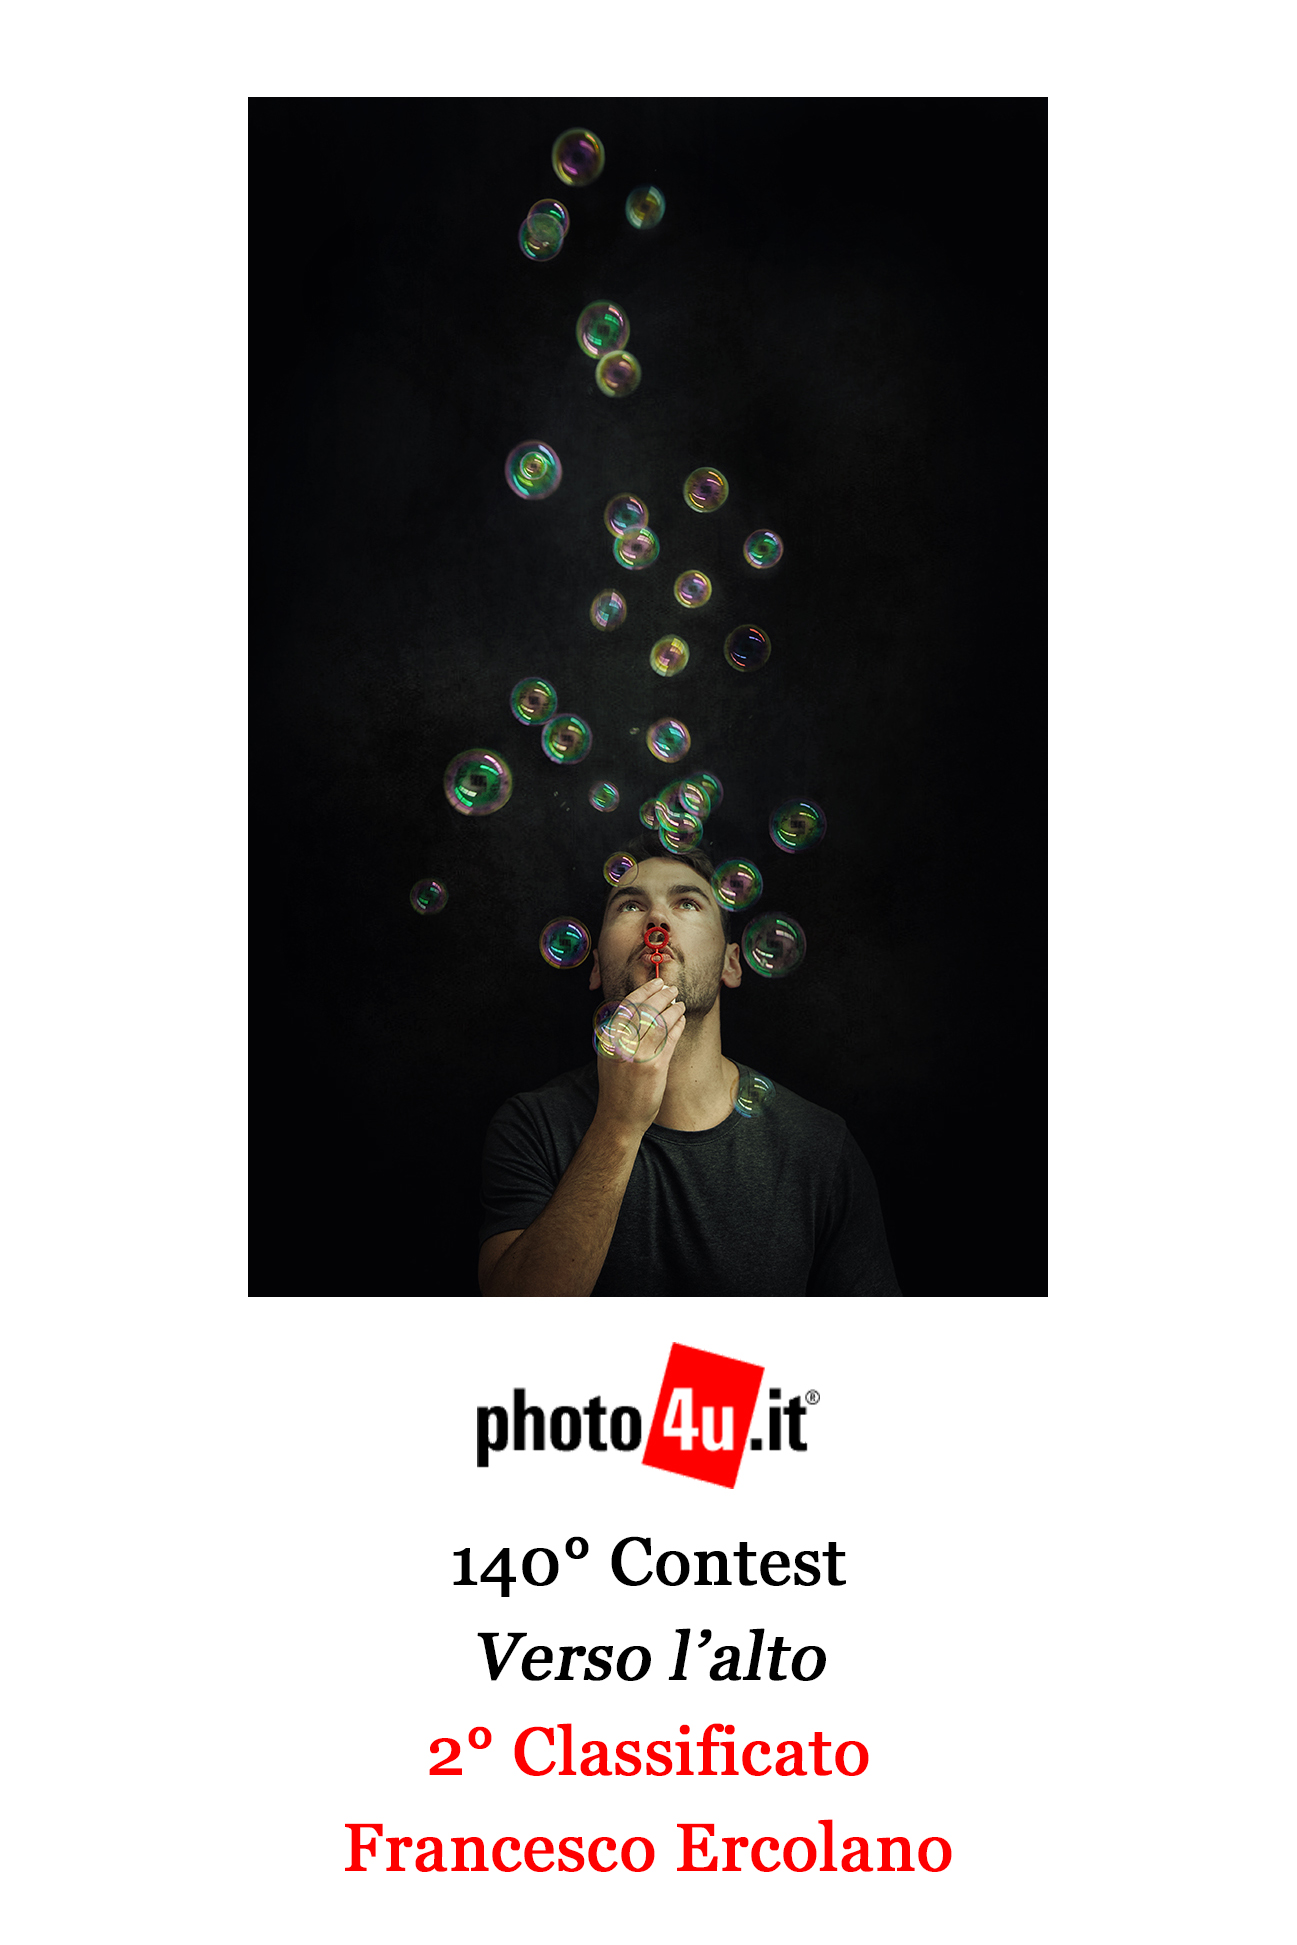 photo4u.it - 140° Contest Attestato - Secondo Classificato.jpg